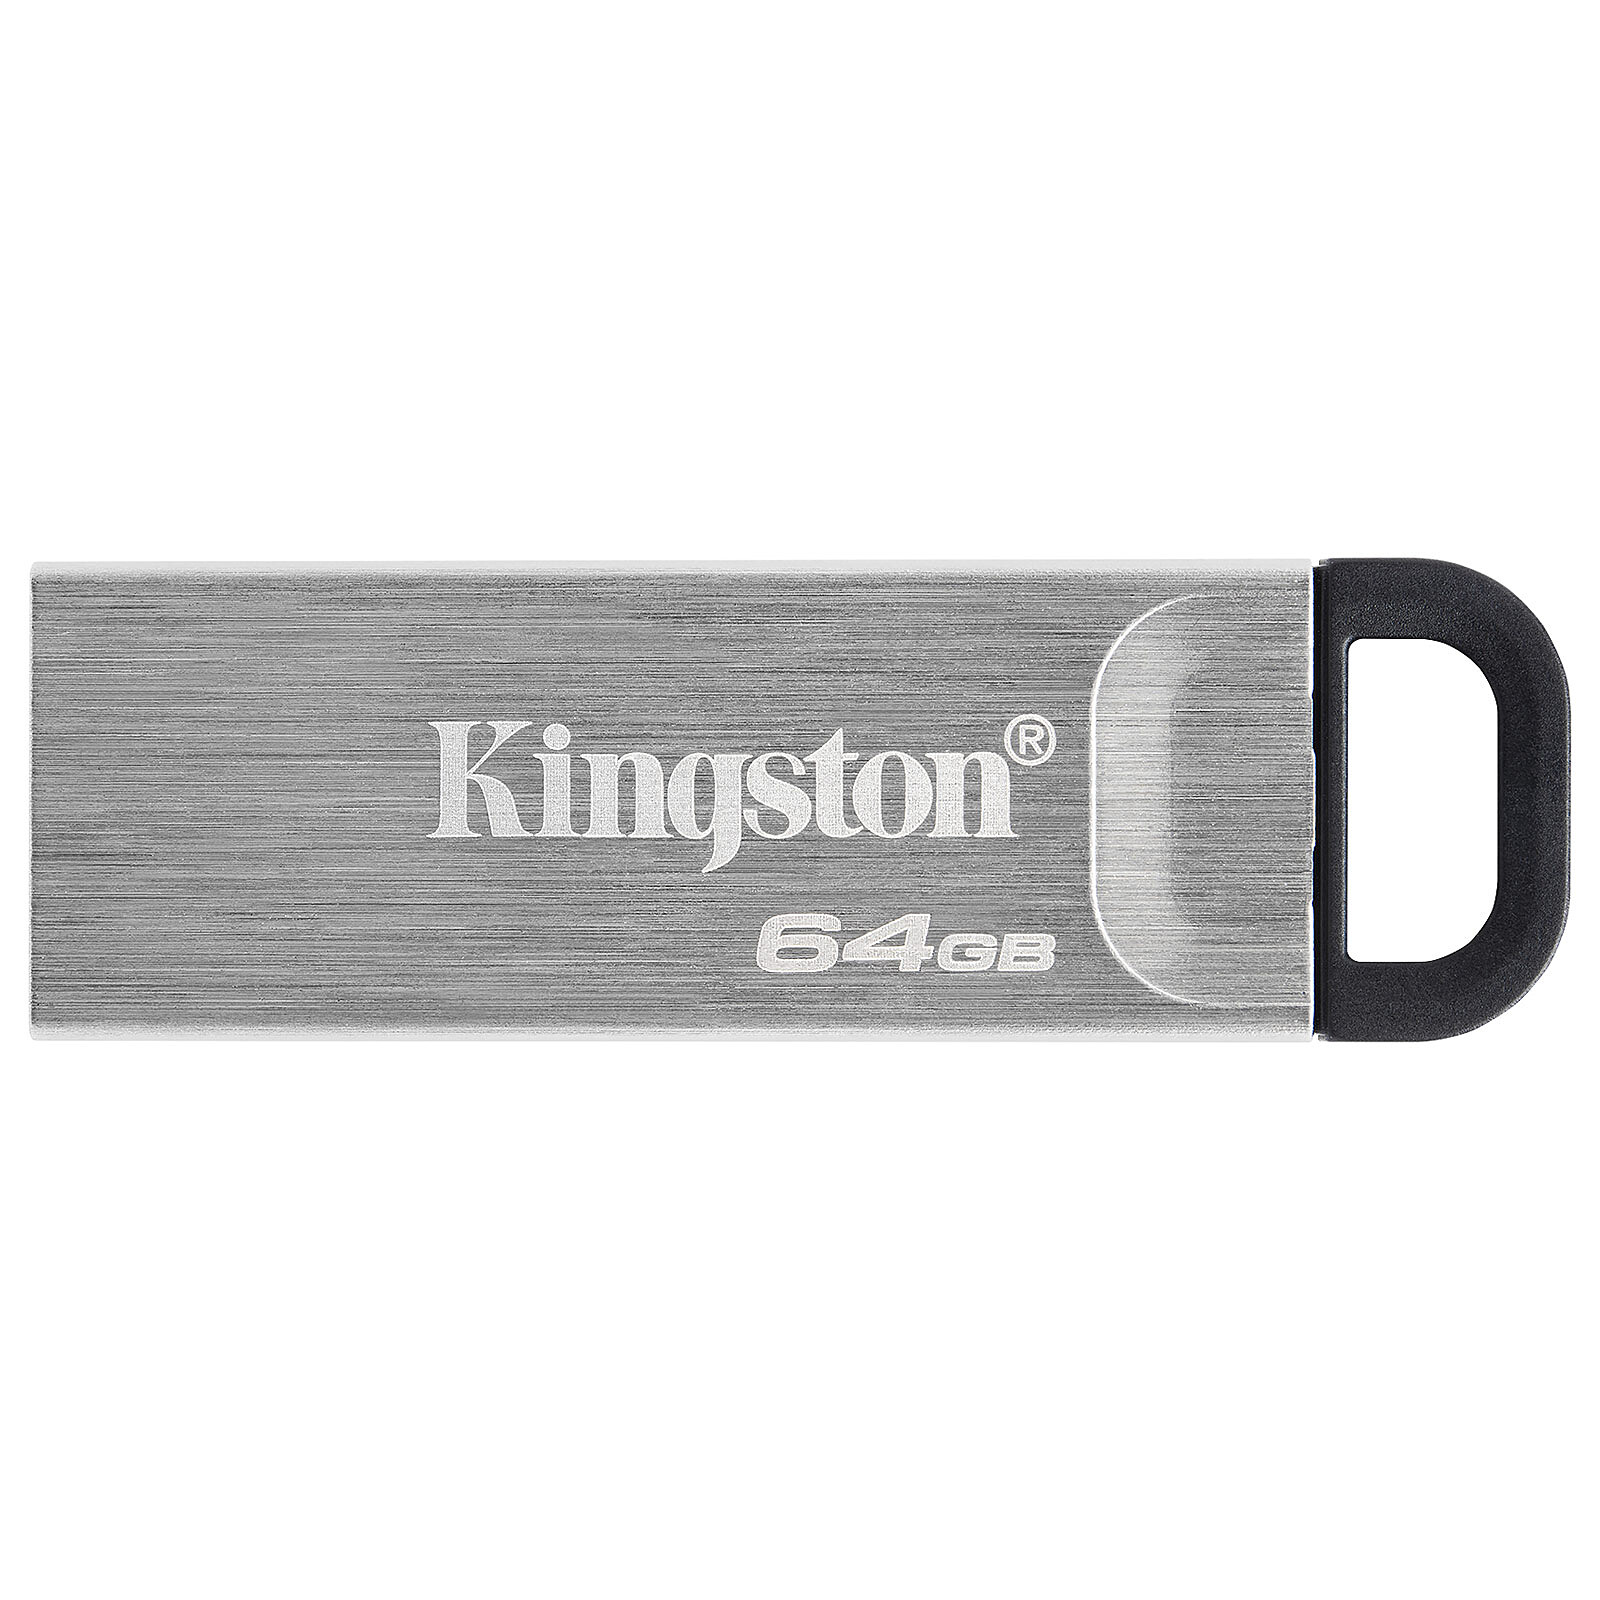 Clé USB 64 Go - Thomson